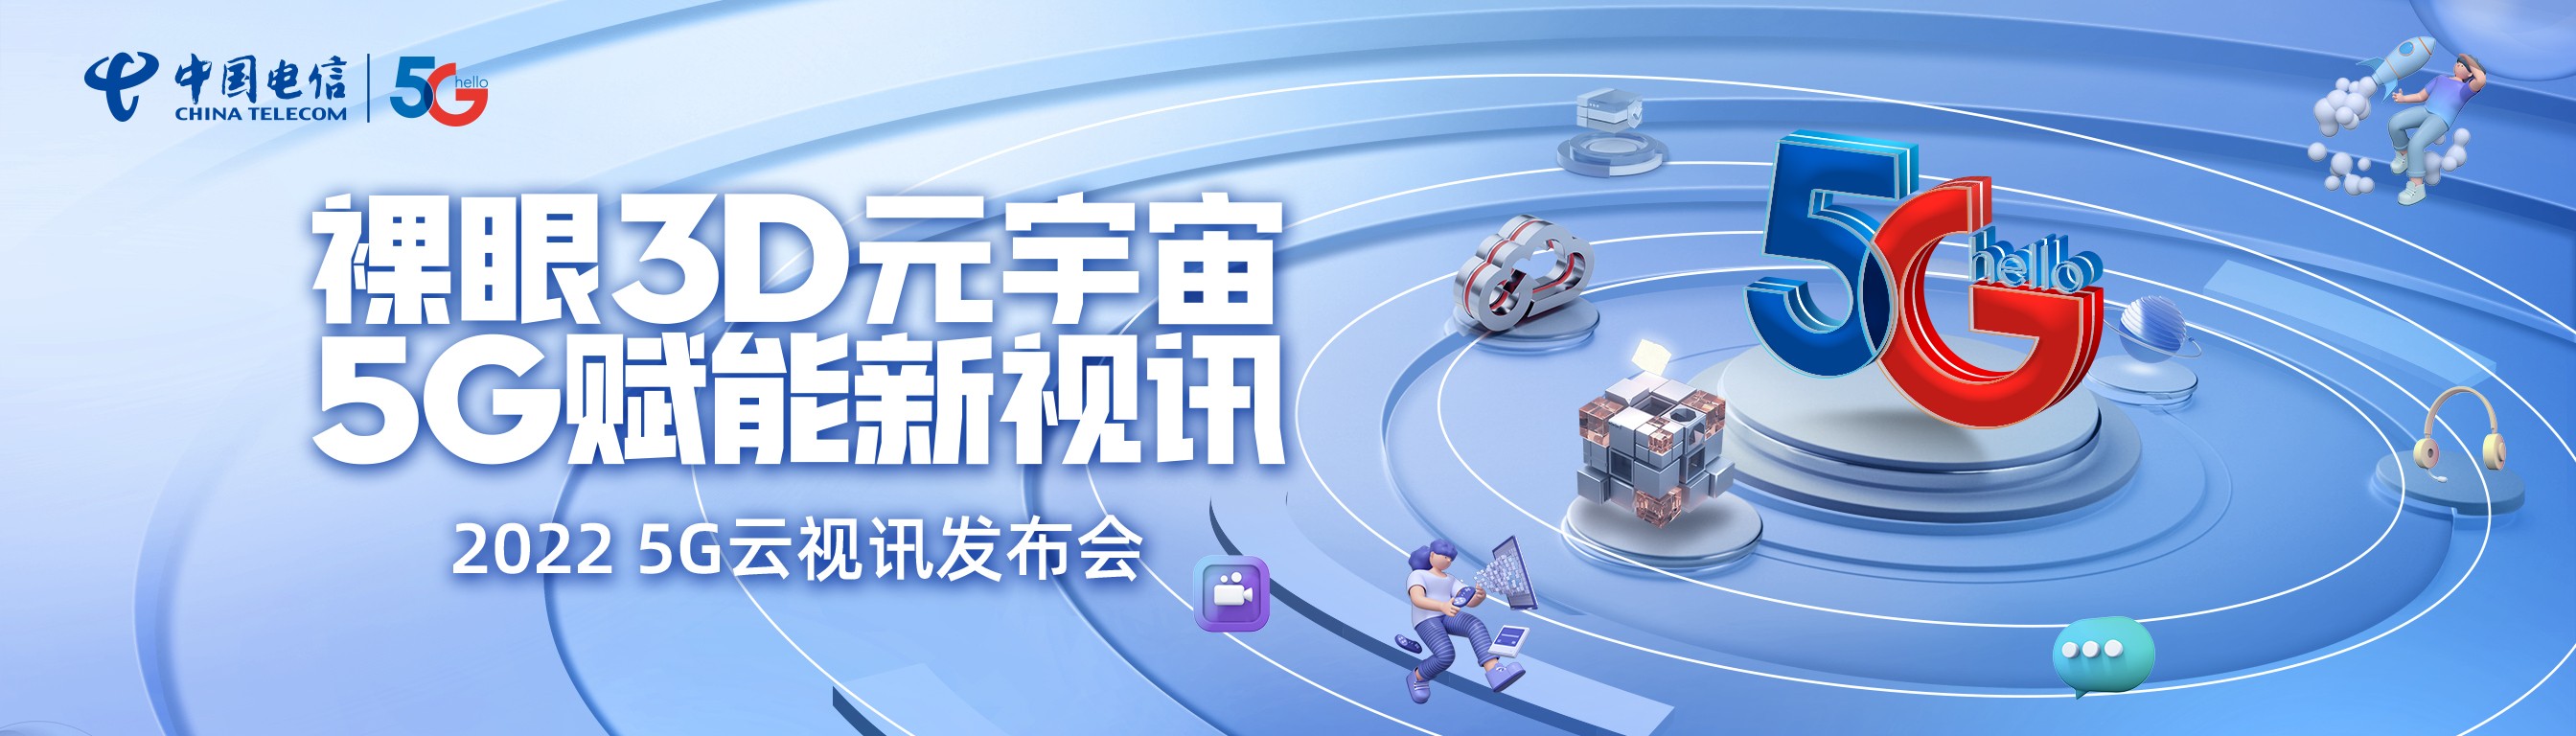 奔向数字生活蓝海，贵州电信发布5G裸眼3D云视讯、翼家智话产品